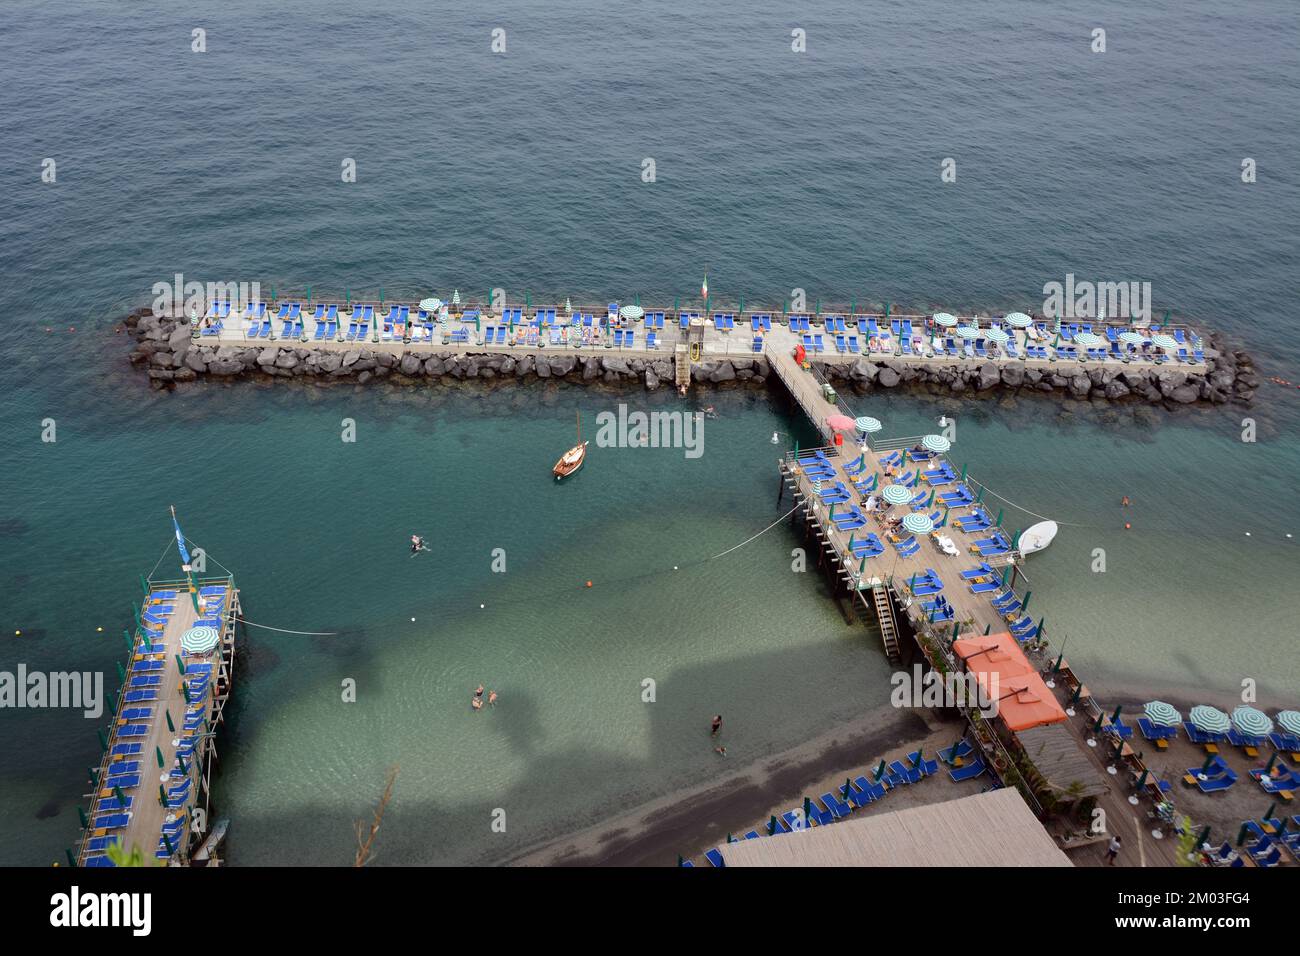 Une terrasse privée de club de plage avec chaise, parasols et nageurs, dans la mer Méditerranée, sous les falaises de Sorrento, Campanie, Italie. Banque D'Images